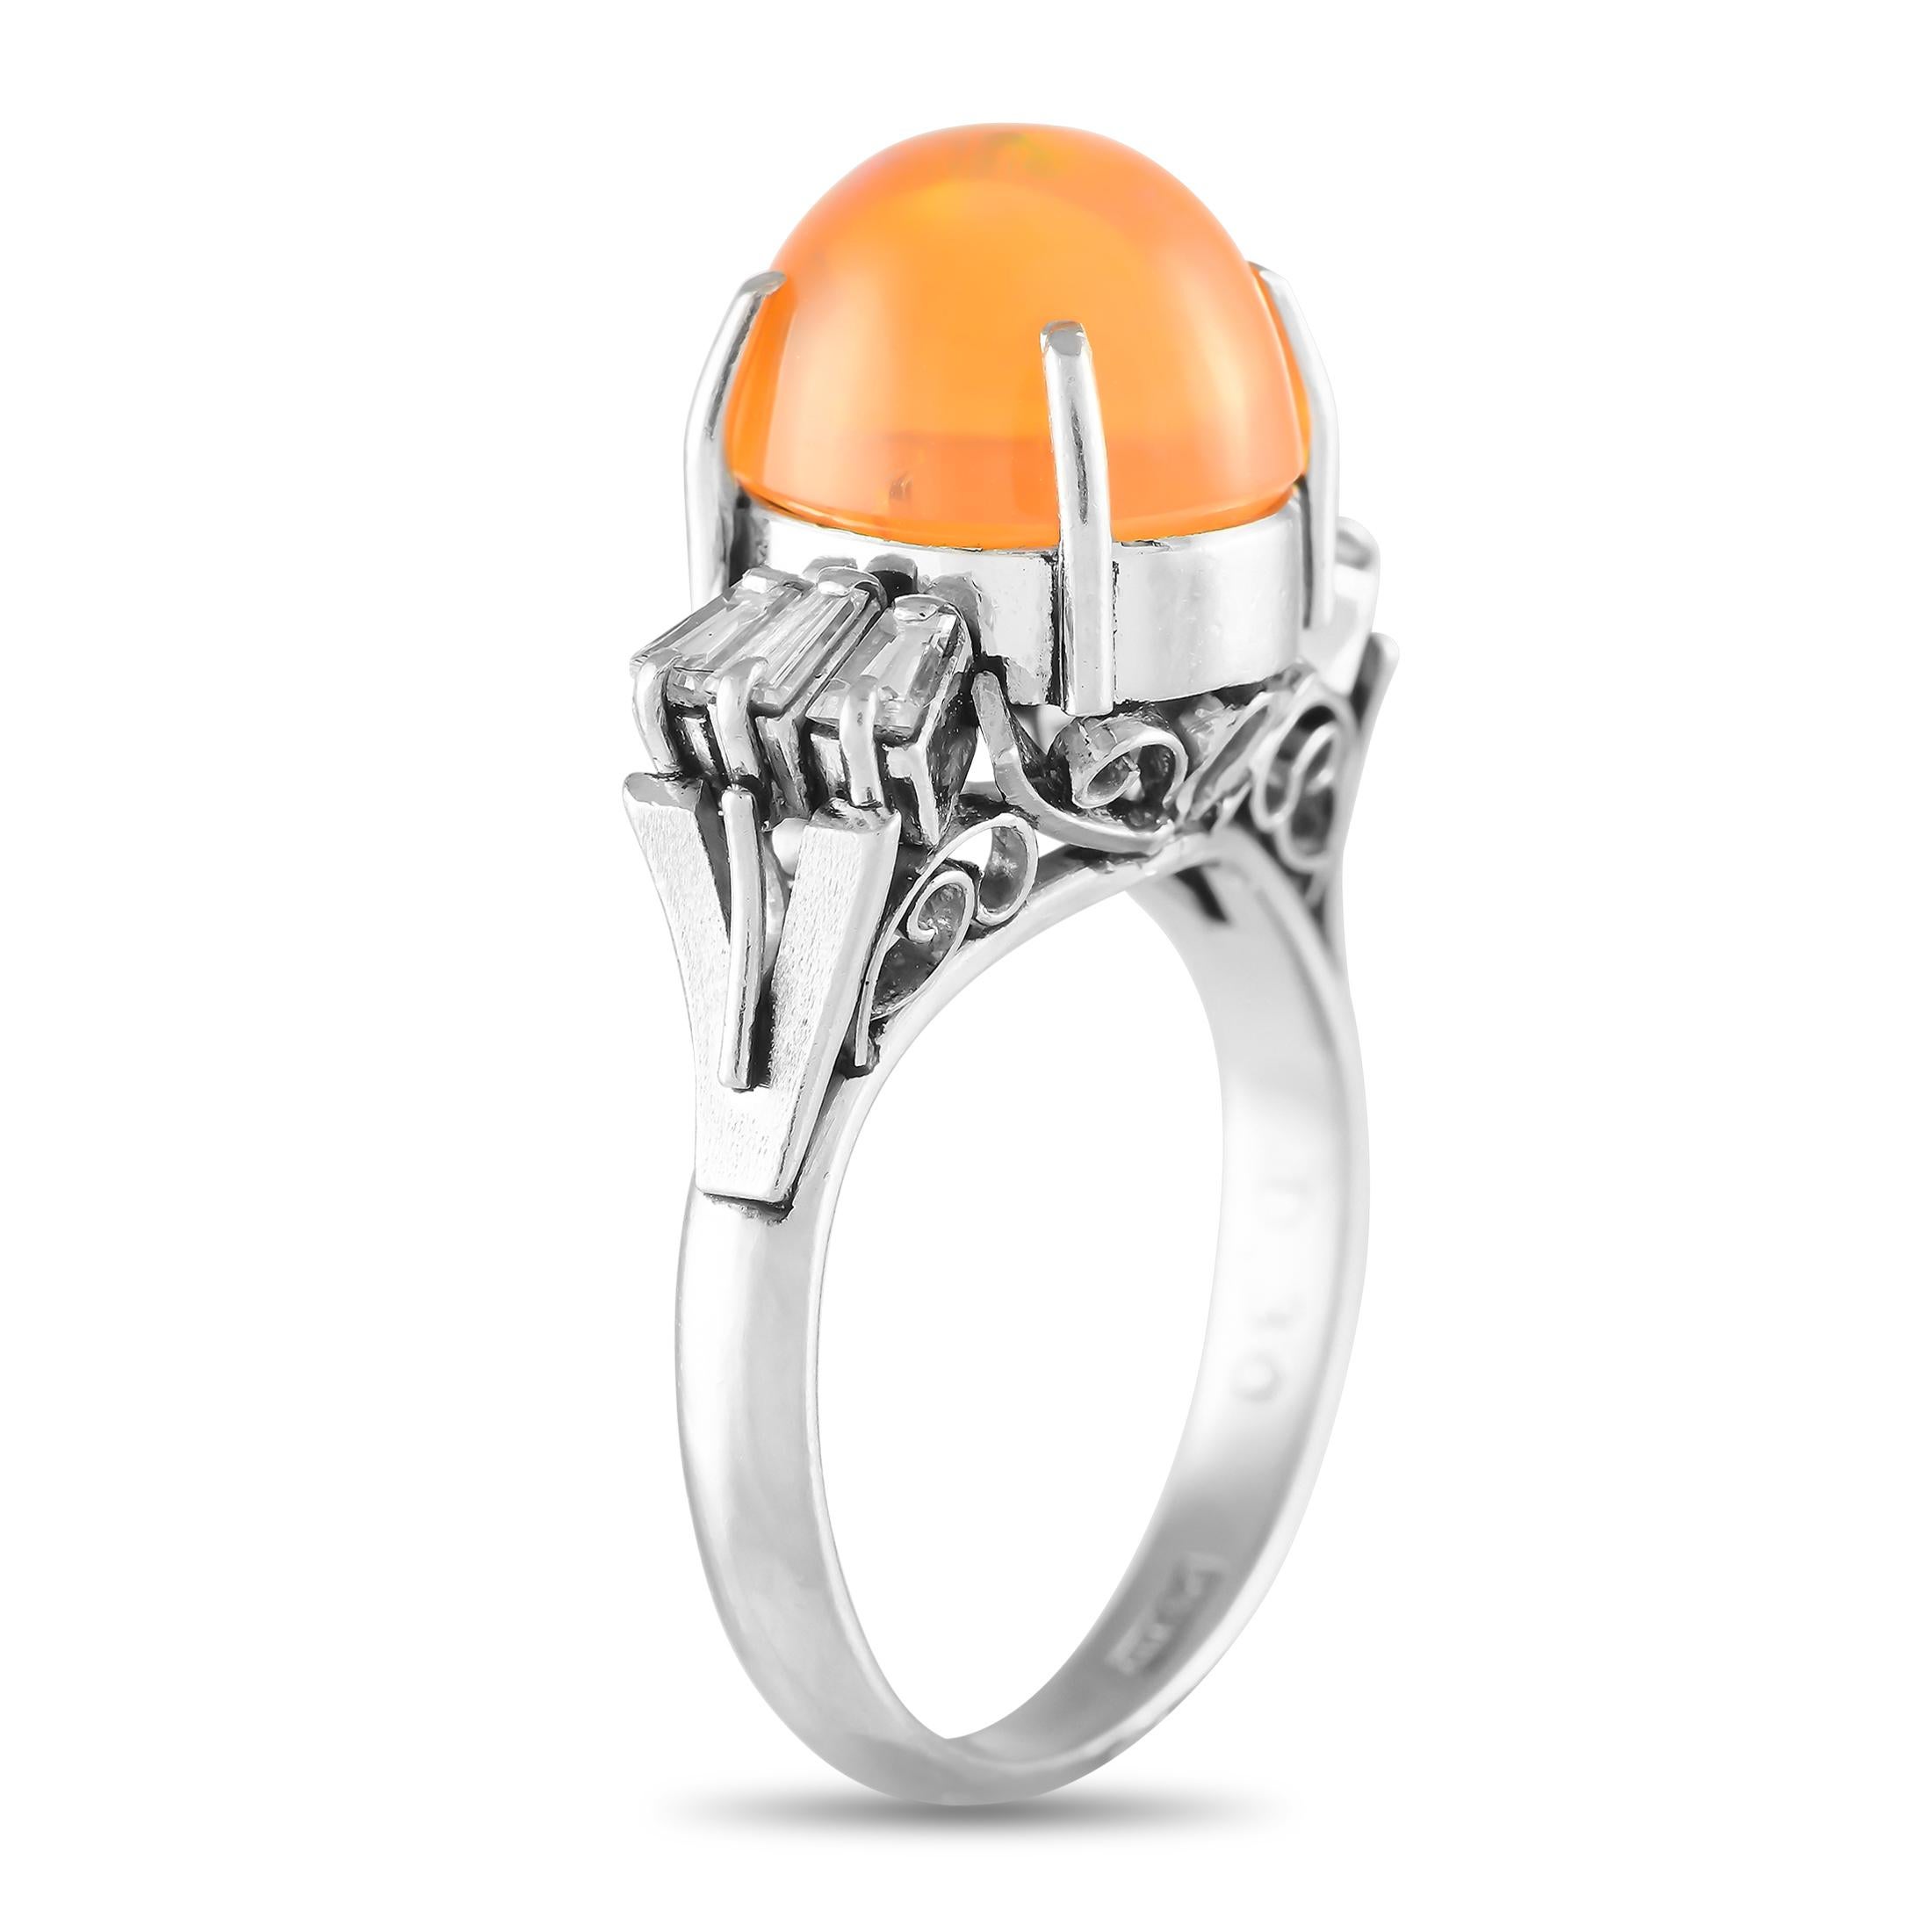 Ein fesselnder, 3,40 Karat schwerer, feurig-oranger Opal ist der Blickfang dieses beeindruckenden Luxusrings. Diamant-Baguettes mit einem Gesamtgewicht von 0,30 Karat verleihen der eleganten Platinfassung zusätzlichen Luxus. Die Breite des Bandes